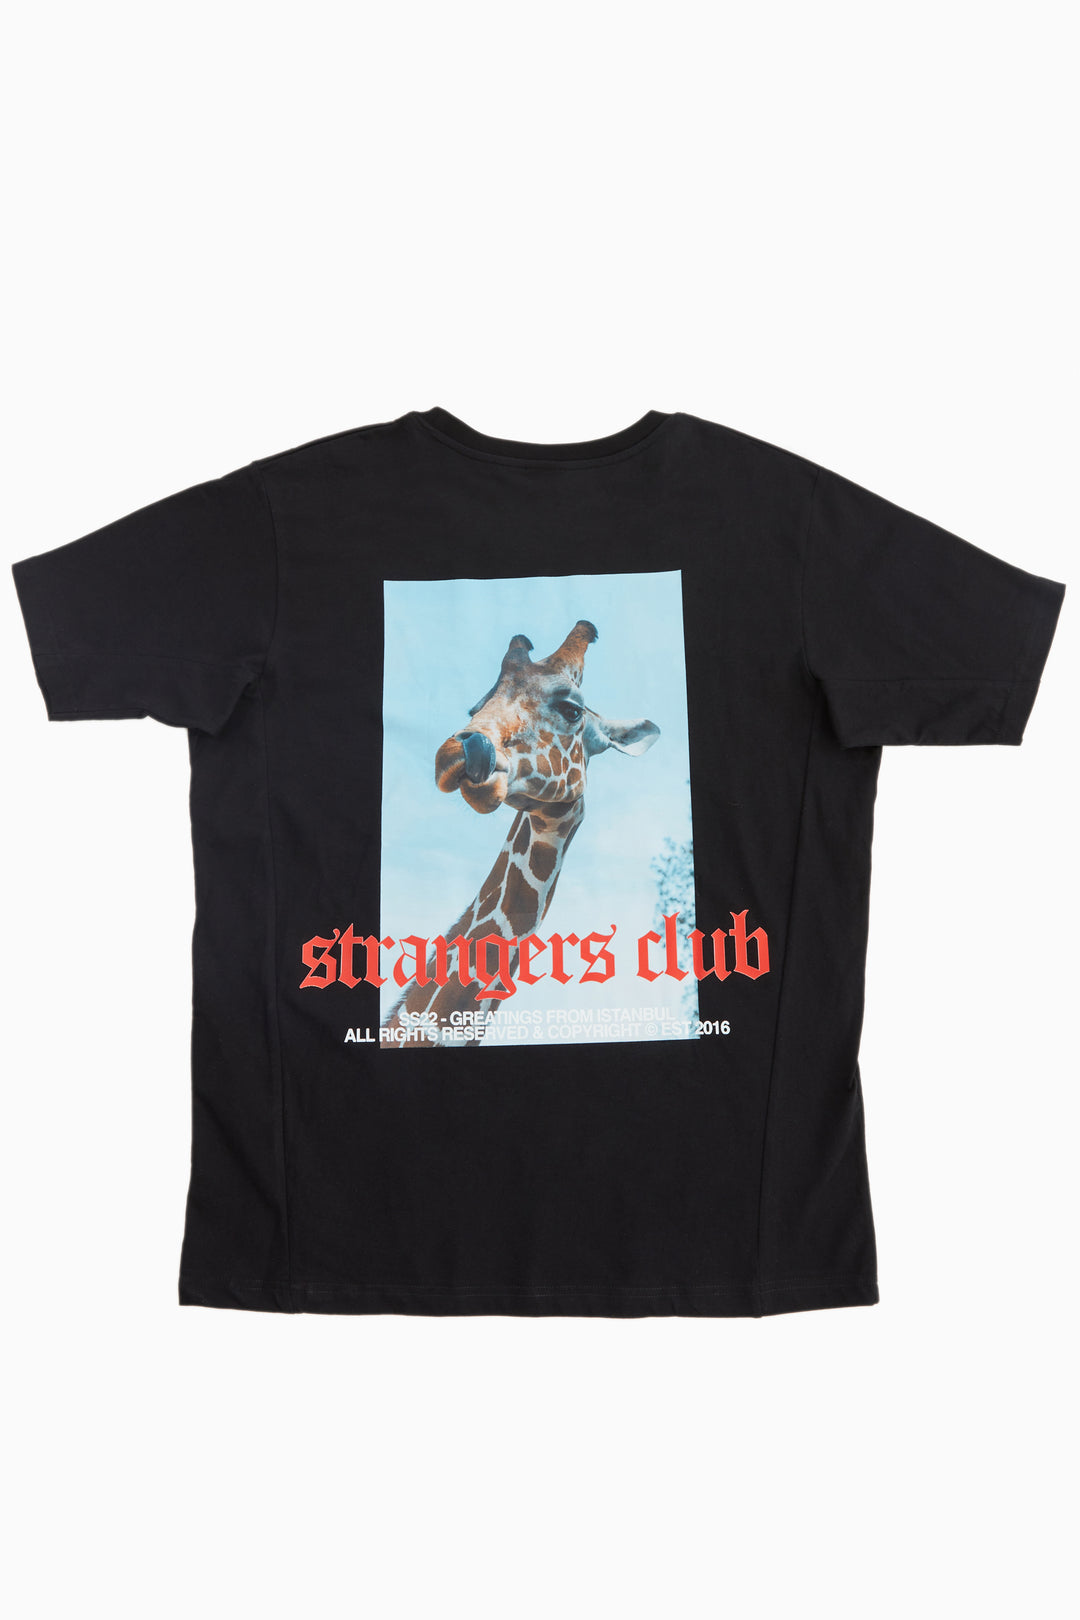 Strangers Club v2.001 / Oversize T-shirt